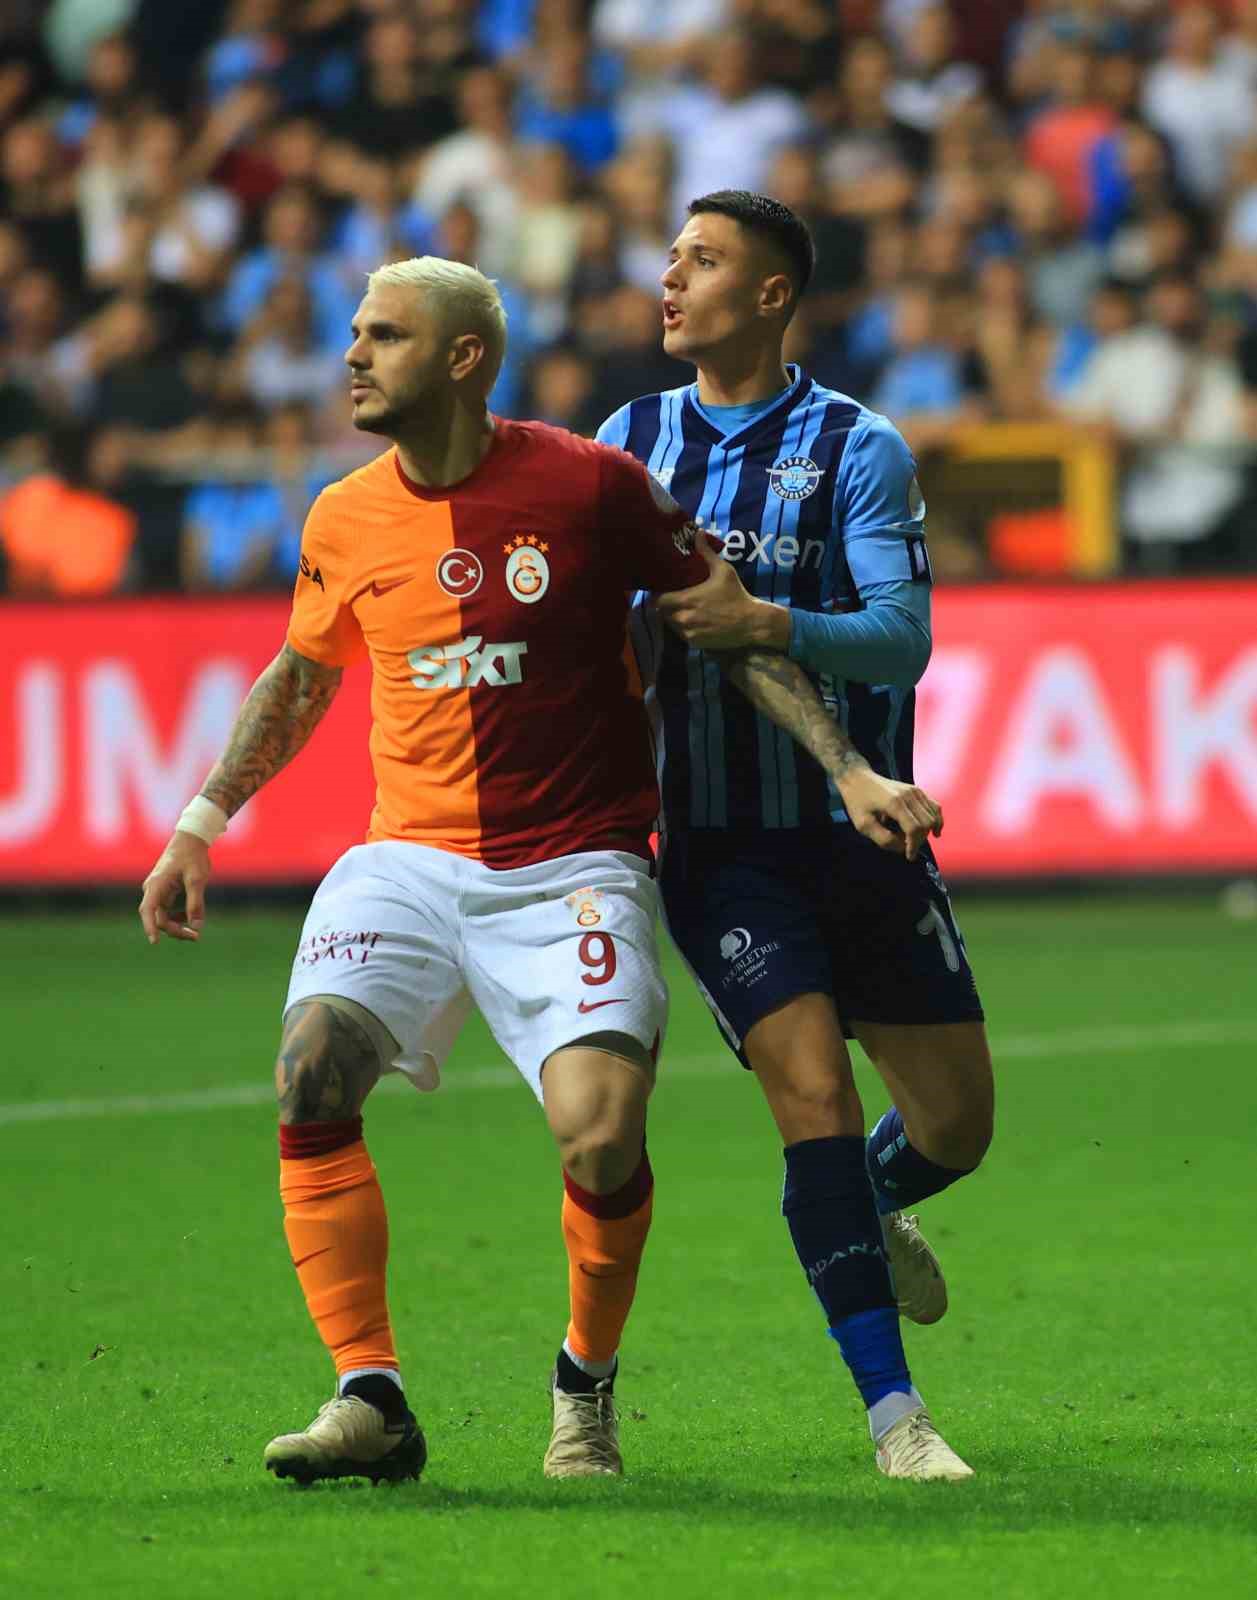 Trendyol Süper Lig: Y. Adana Demirspor: 0 - Galatasaray: 3 (Maç sonucu)
